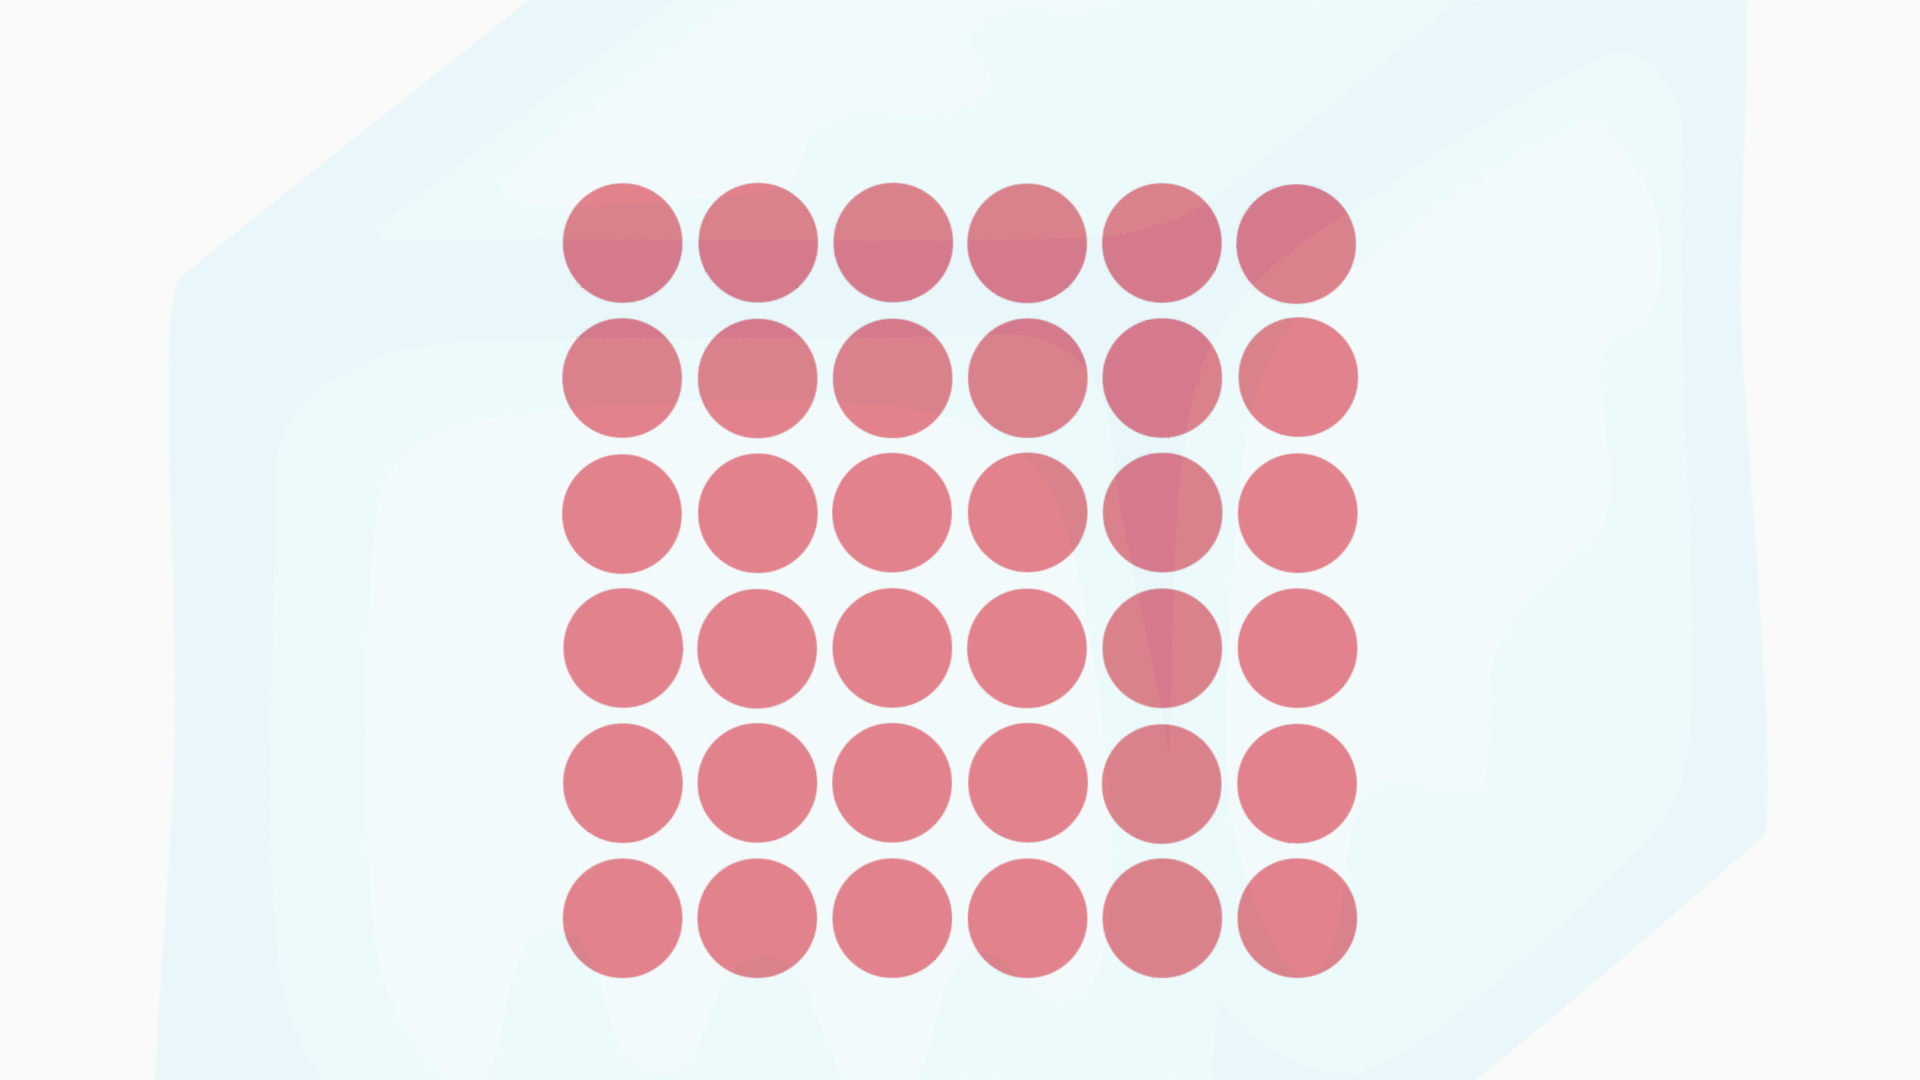 Eine Animation: Im Eiswürfel befindet sich eine Vielzahl an Teilchen (dargestellt in Form roter Punkte), die sich langsam hin- und herbwegen. Sie bewegen sich nur langsam, sind nah beieinander und behalten ihre Position innerhalb der Teilchenanordnung.